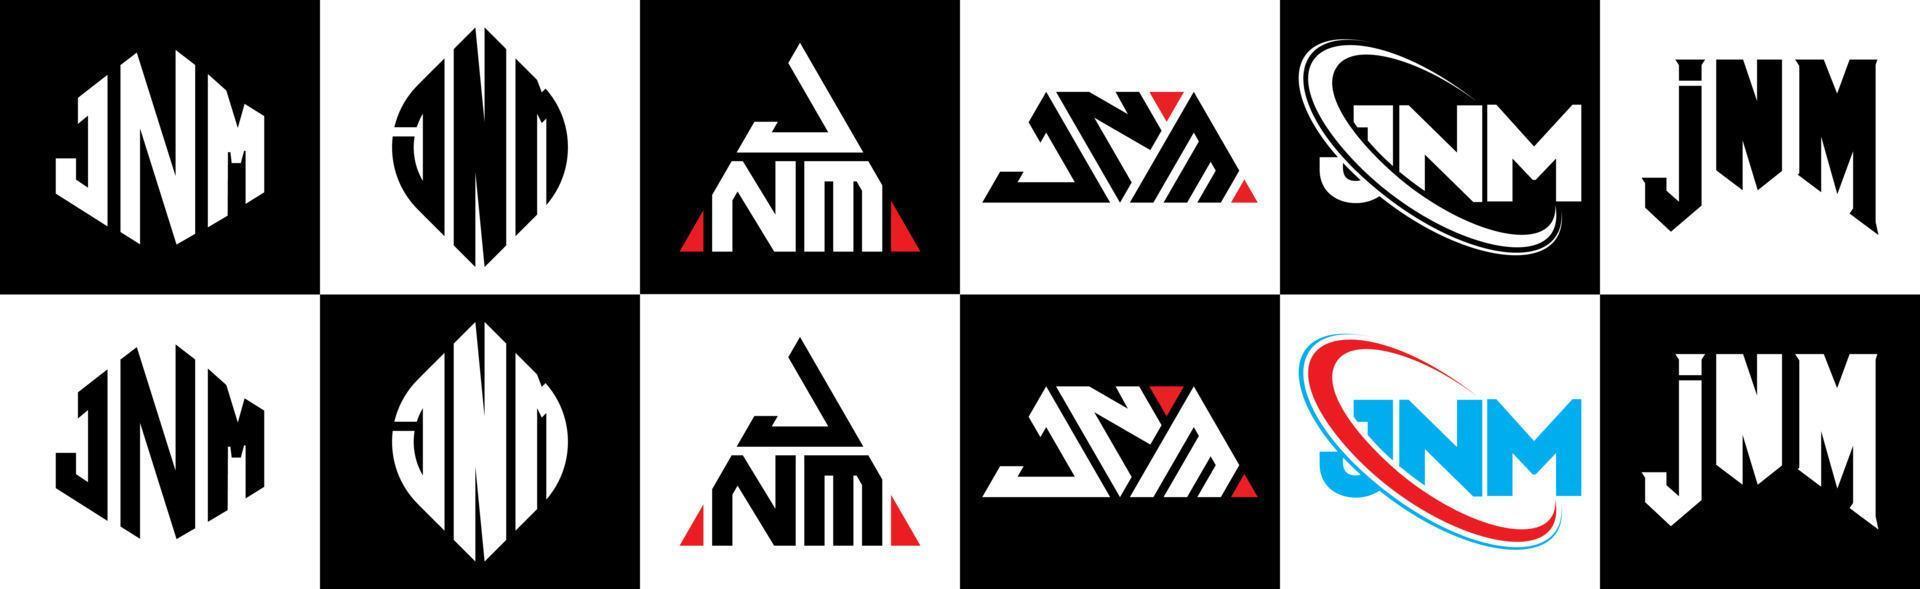 jnm-Buchstaben-Logo-Design in sechs Stilen. jnm Polygon, Kreis, Dreieck, Sechseck, flacher und einfacher Stil mit schwarz-weißem Buchstabenlogo in einer Zeichenfläche. jnm minimalistisches und klassisches Logo vektor